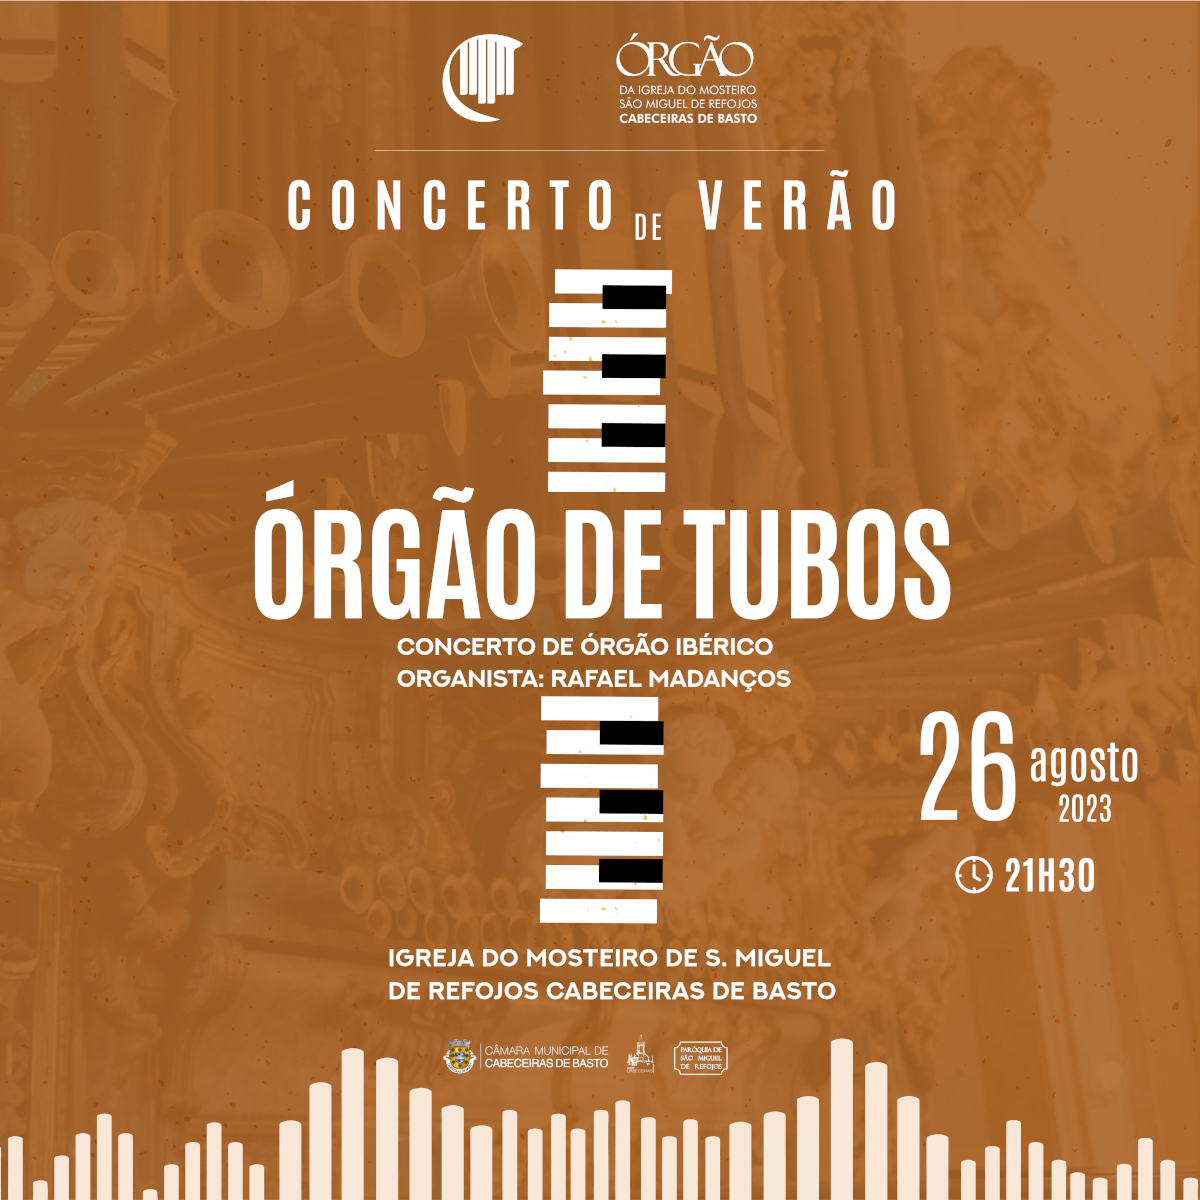 Leia mais sobre Concerto de Verão de Órgão de Tubos com organista cabeceirense